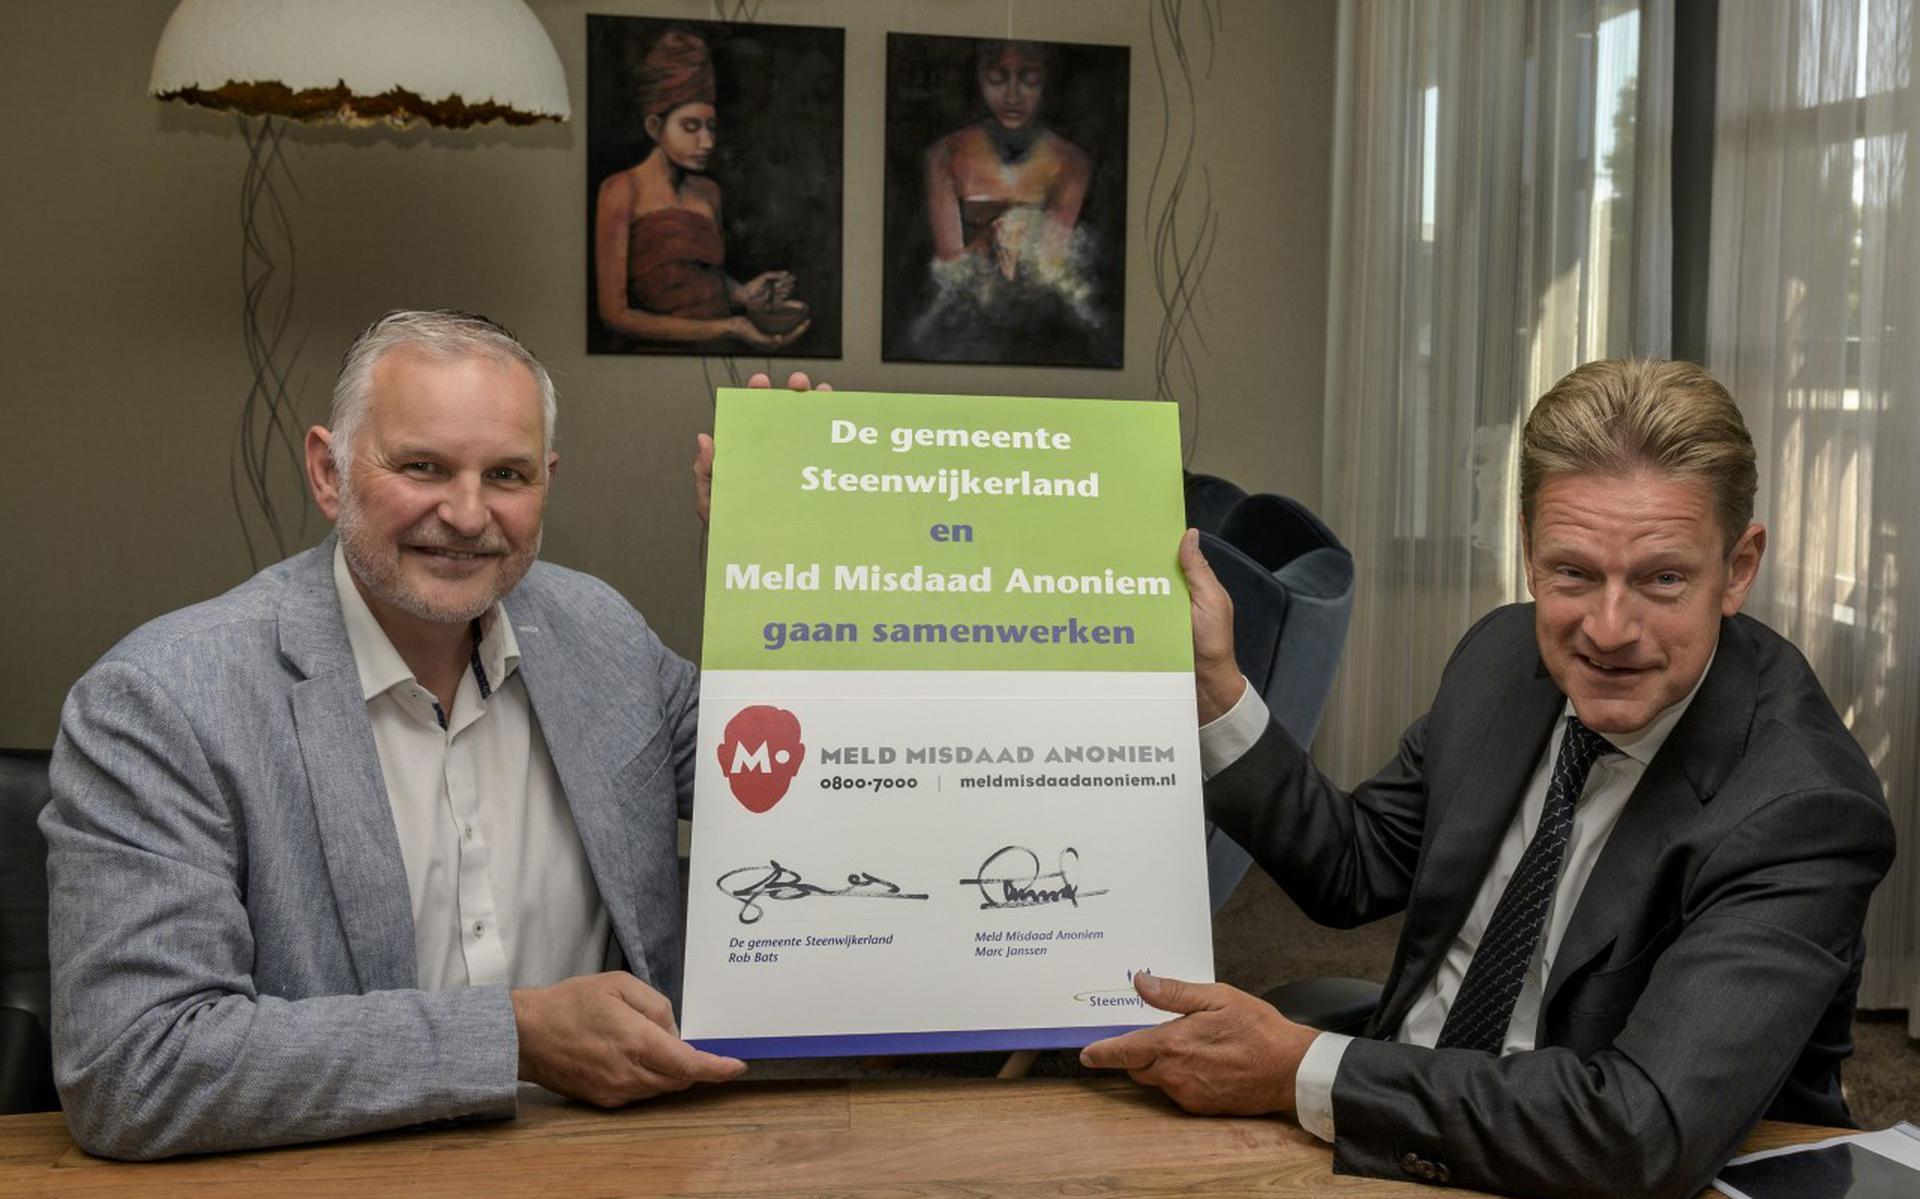 De samenwerking tussen Steenwijkerland en Meld Misdaad Anoniem is ondertekend door burgemeester Rob Bats (r) en Marc Janssen, van Meld Misdaad Anoniem.